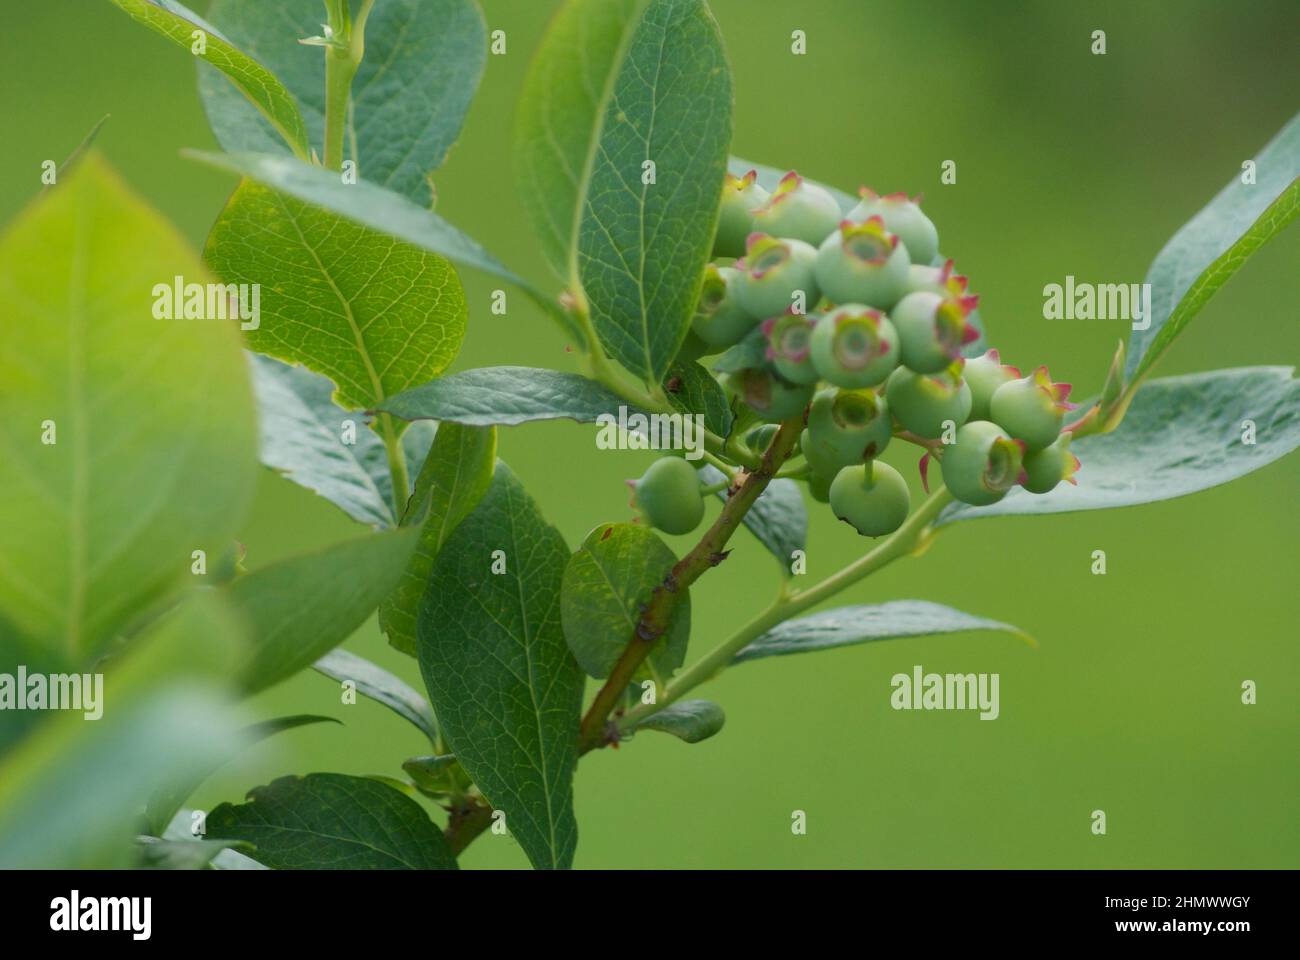 Eine Farbe: Grüne Blätter und unreife grüne Beeren wachsen auf einem Heidelbeerbusch. Stockfoto